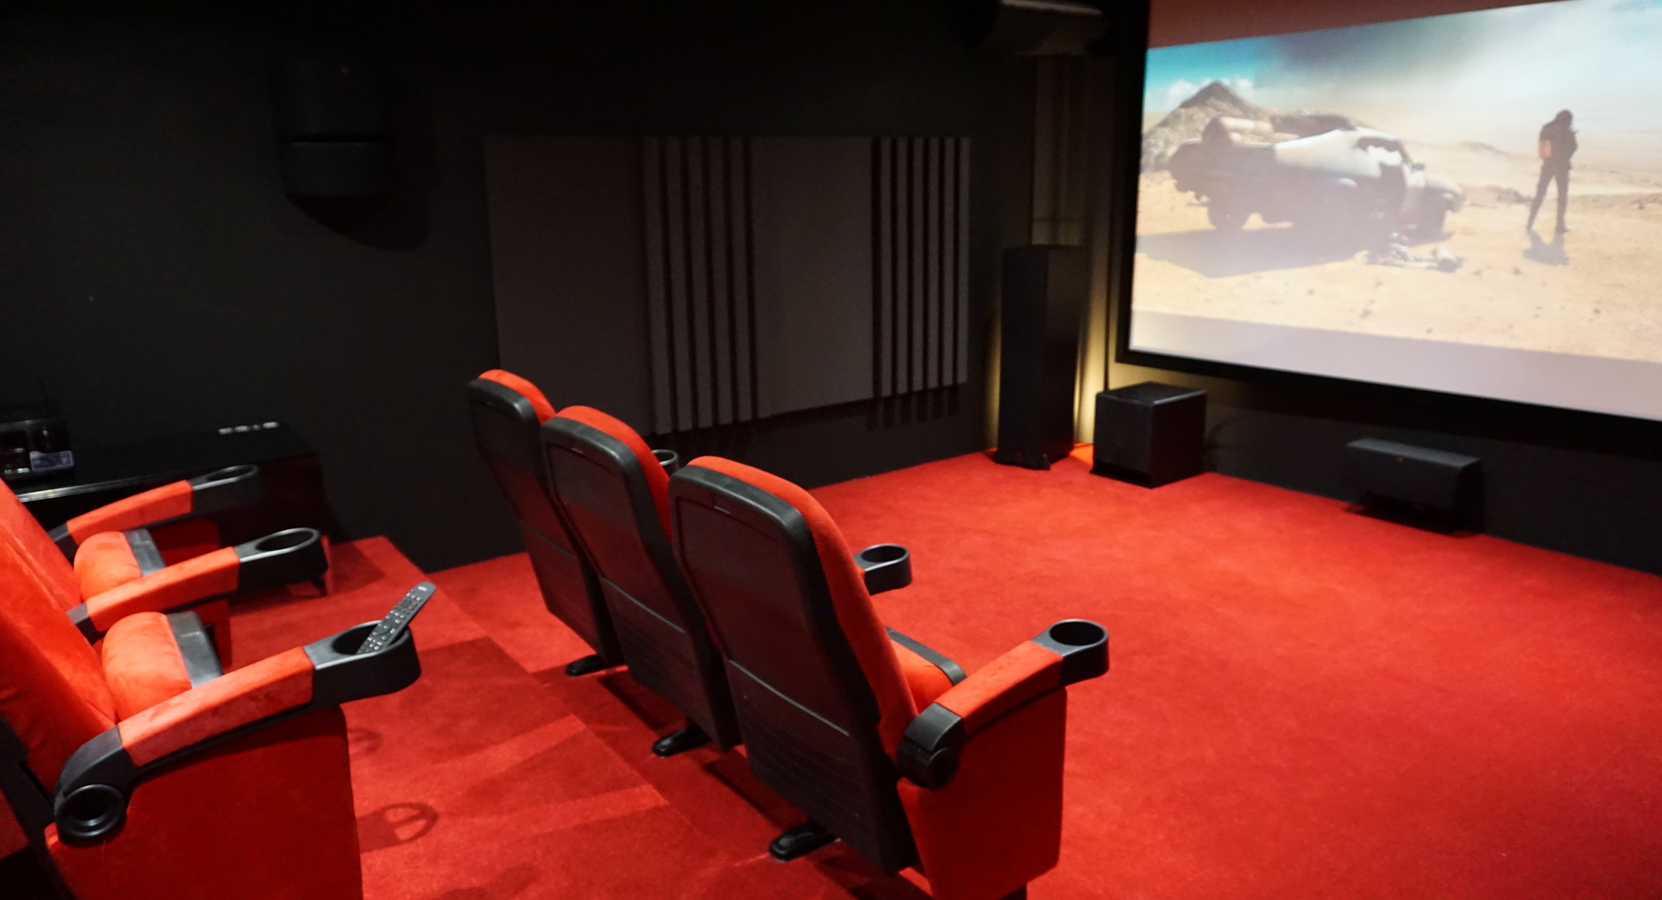 Comment réaliser une salle de cinéma / home cinéma chez soi